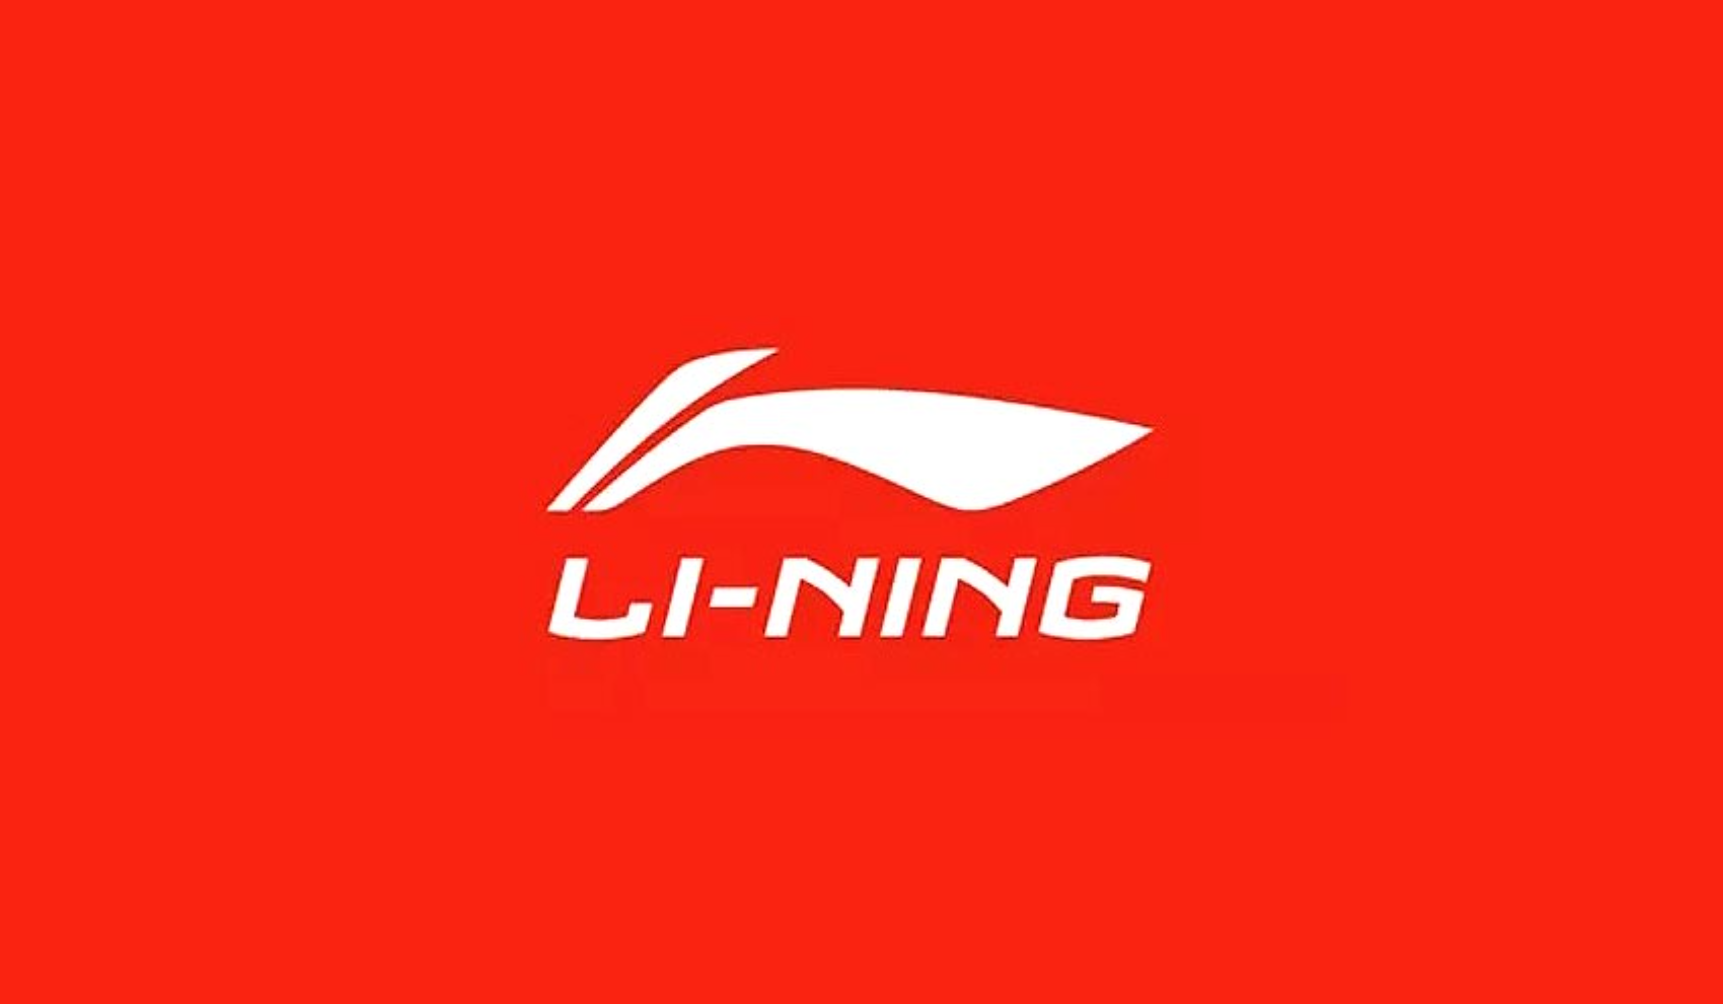 李宁是哪个国家的品牌 李宁是中国的品牌吗还是日本的